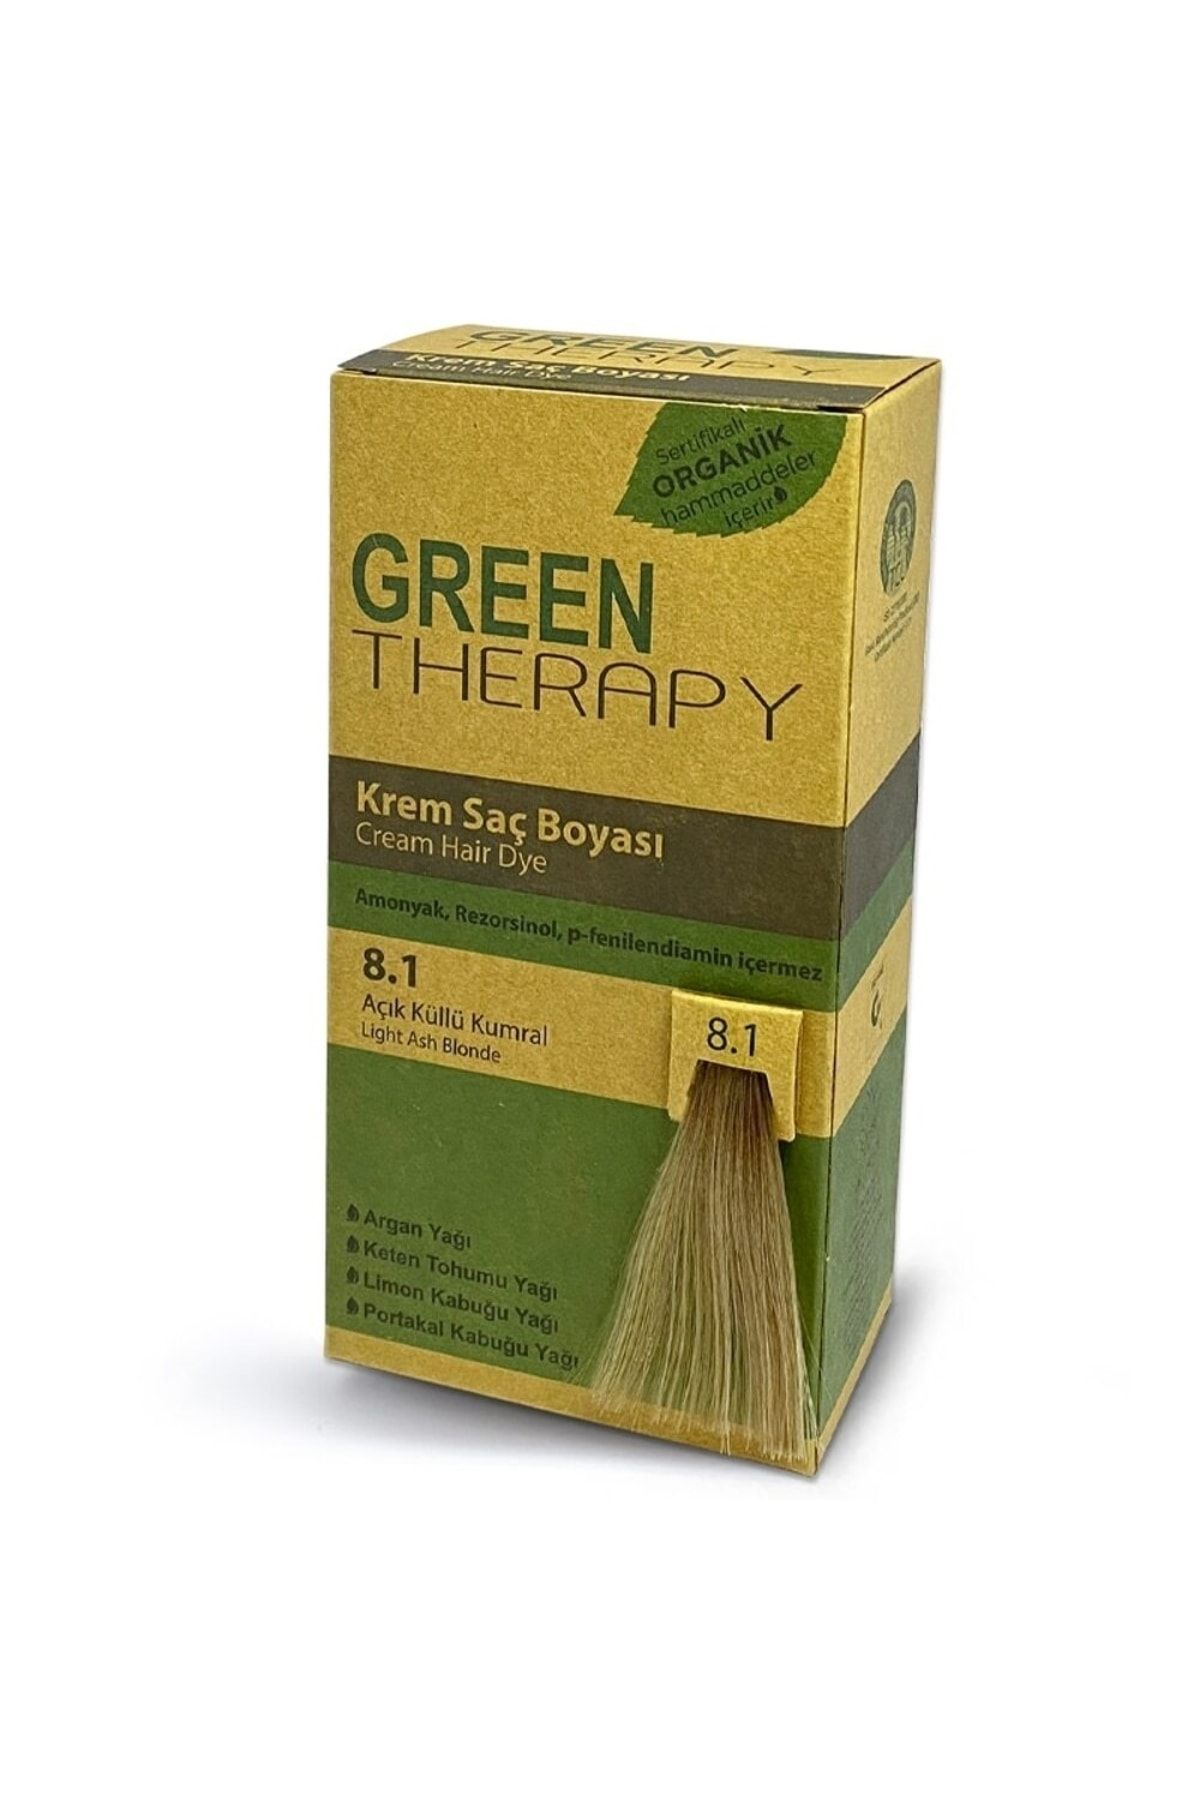 Green Therapy Krem Saç Boyası 7,1 Küllü Kumral